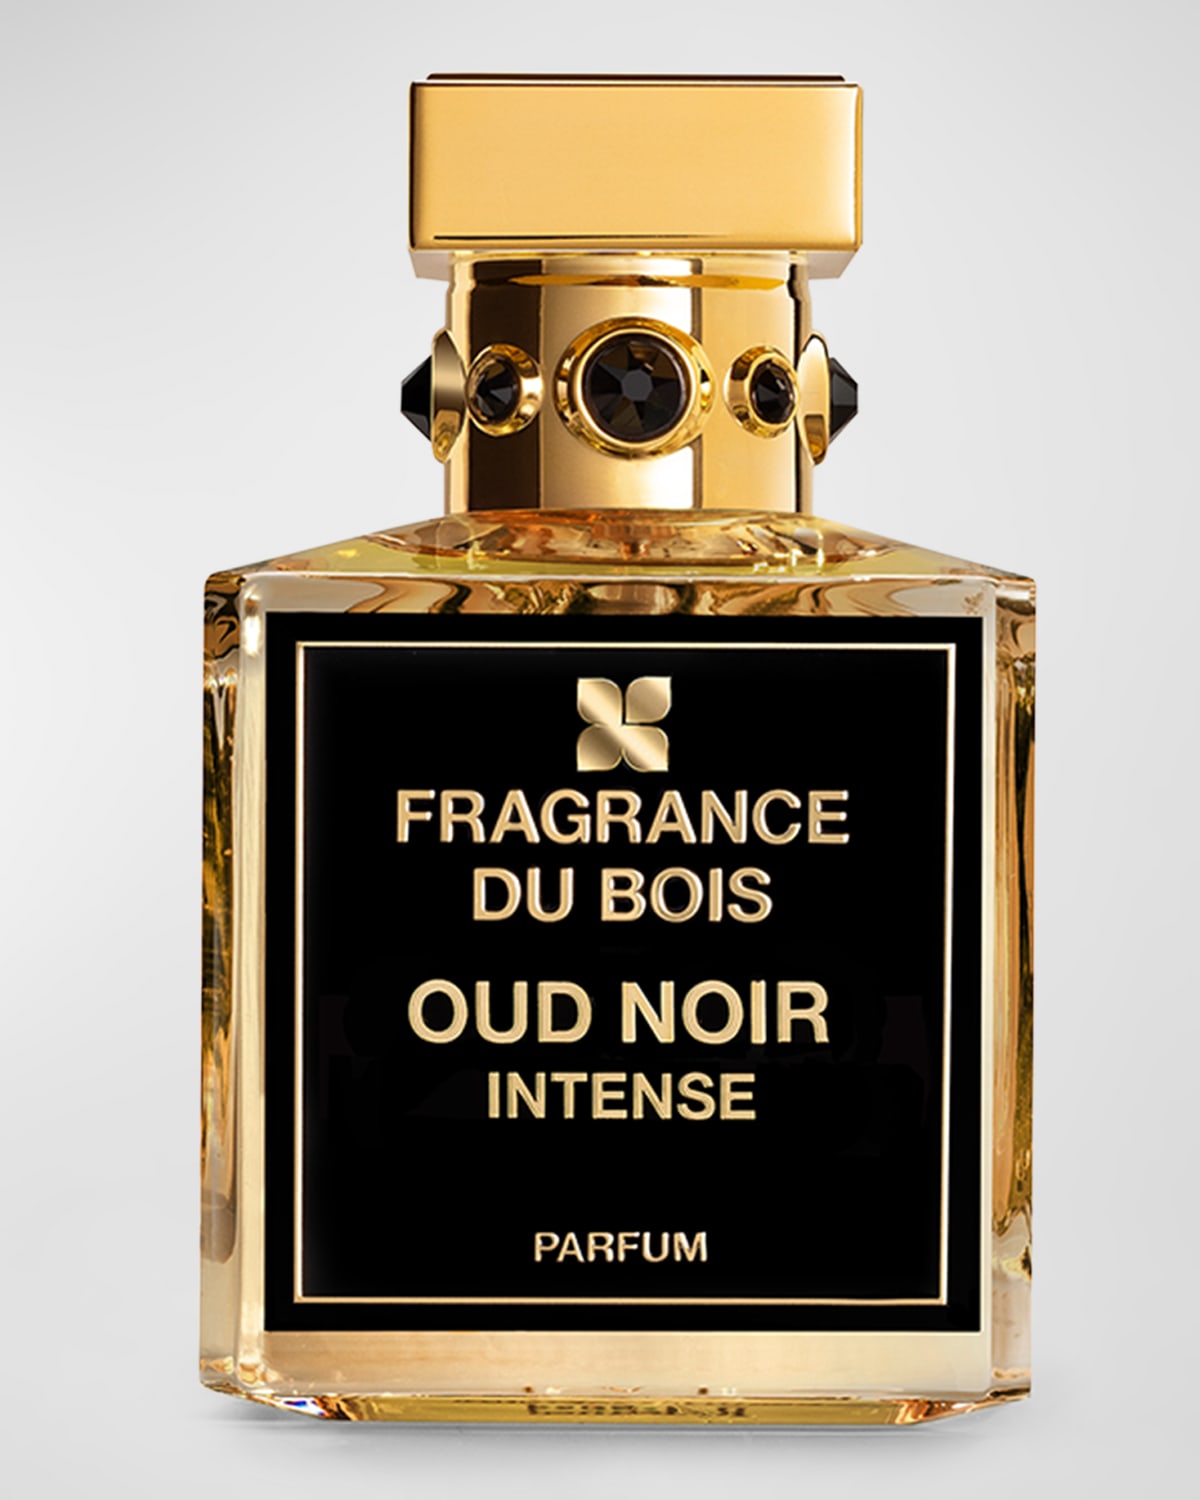 Fragrance Du Bois Oud Noir Intense Parfum, 3.4 Oz.